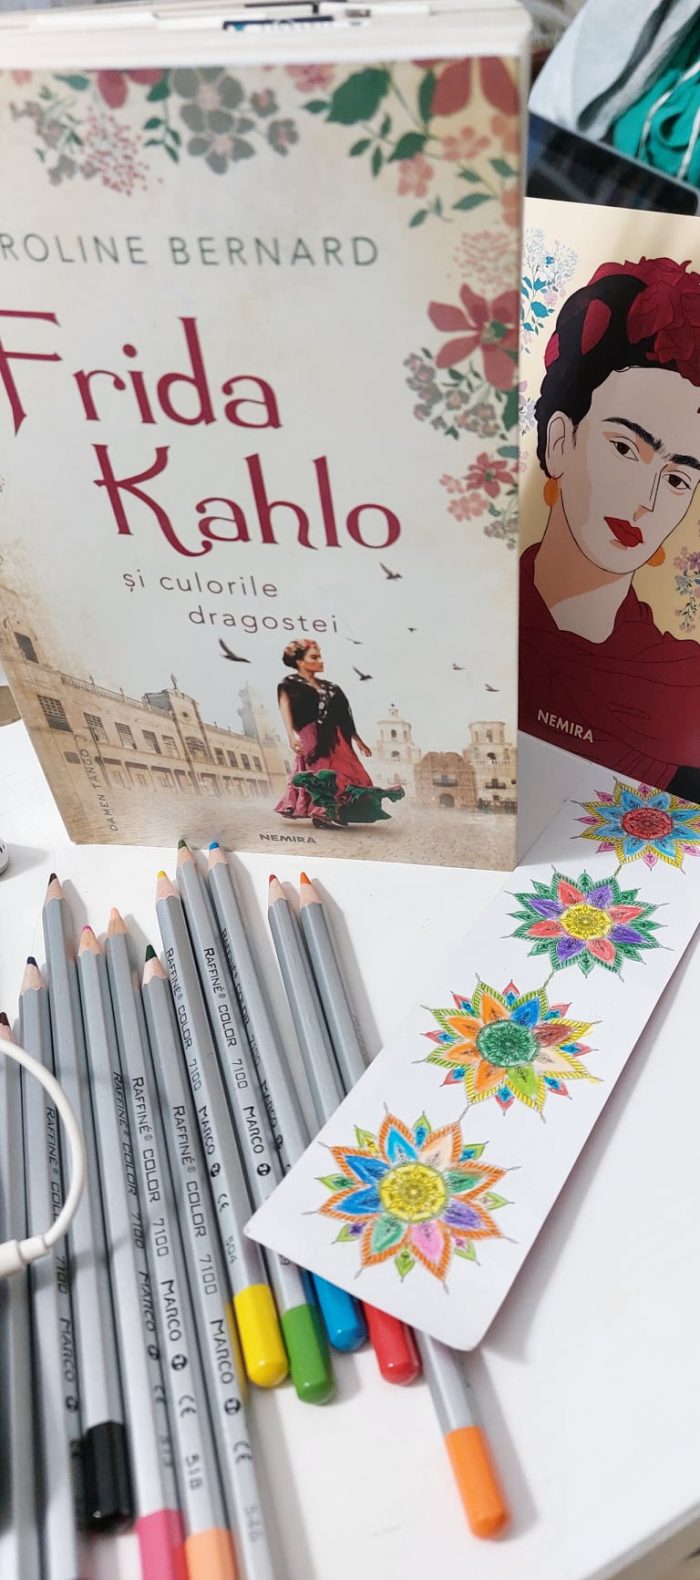 Frida Kahlo și culorile dragostei de Caroline Bernard - Editura Nemira